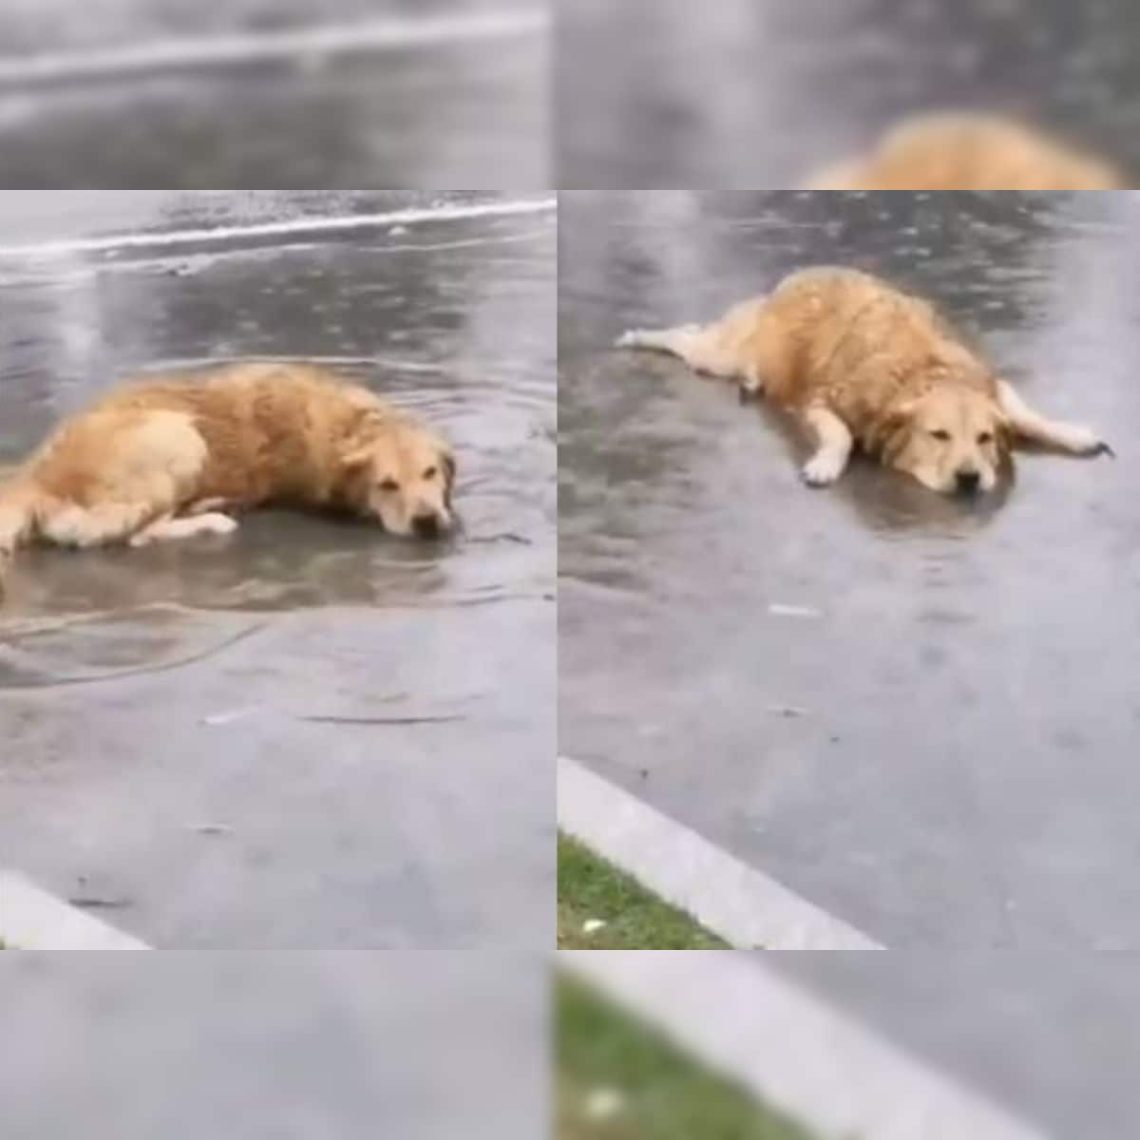 Dog makes puddles at home